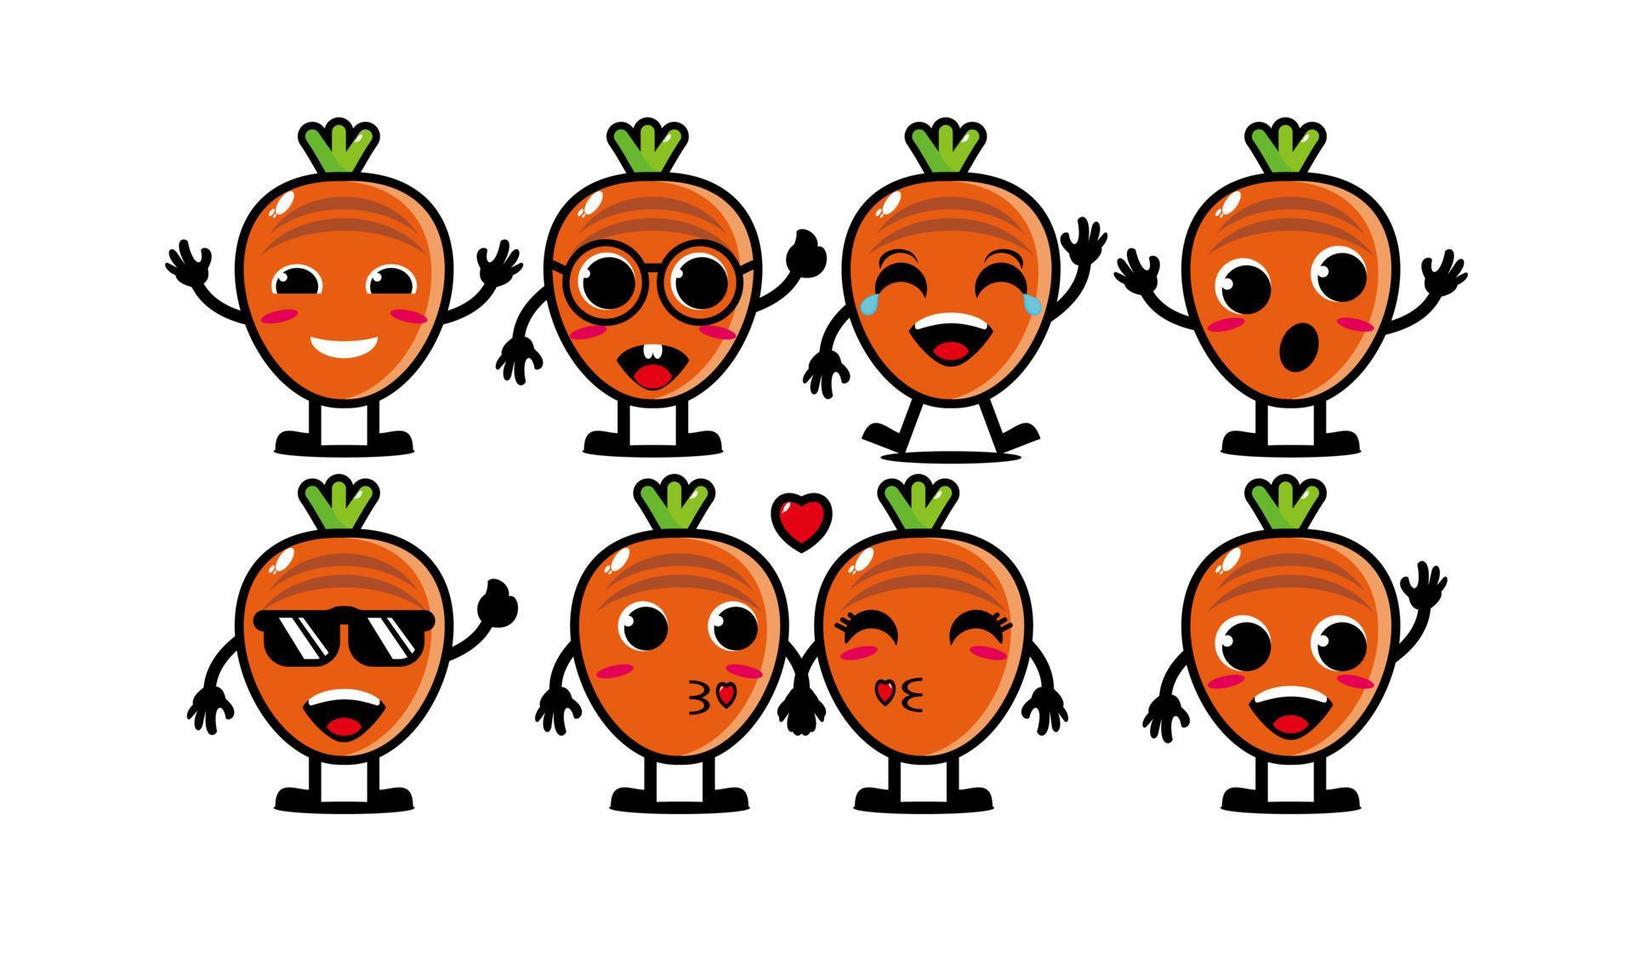 sött leende rolig morot grönsak set collection.vector platt tecknad ansikte karaktär maskot illustration .isolated på vit bakgrund vektor